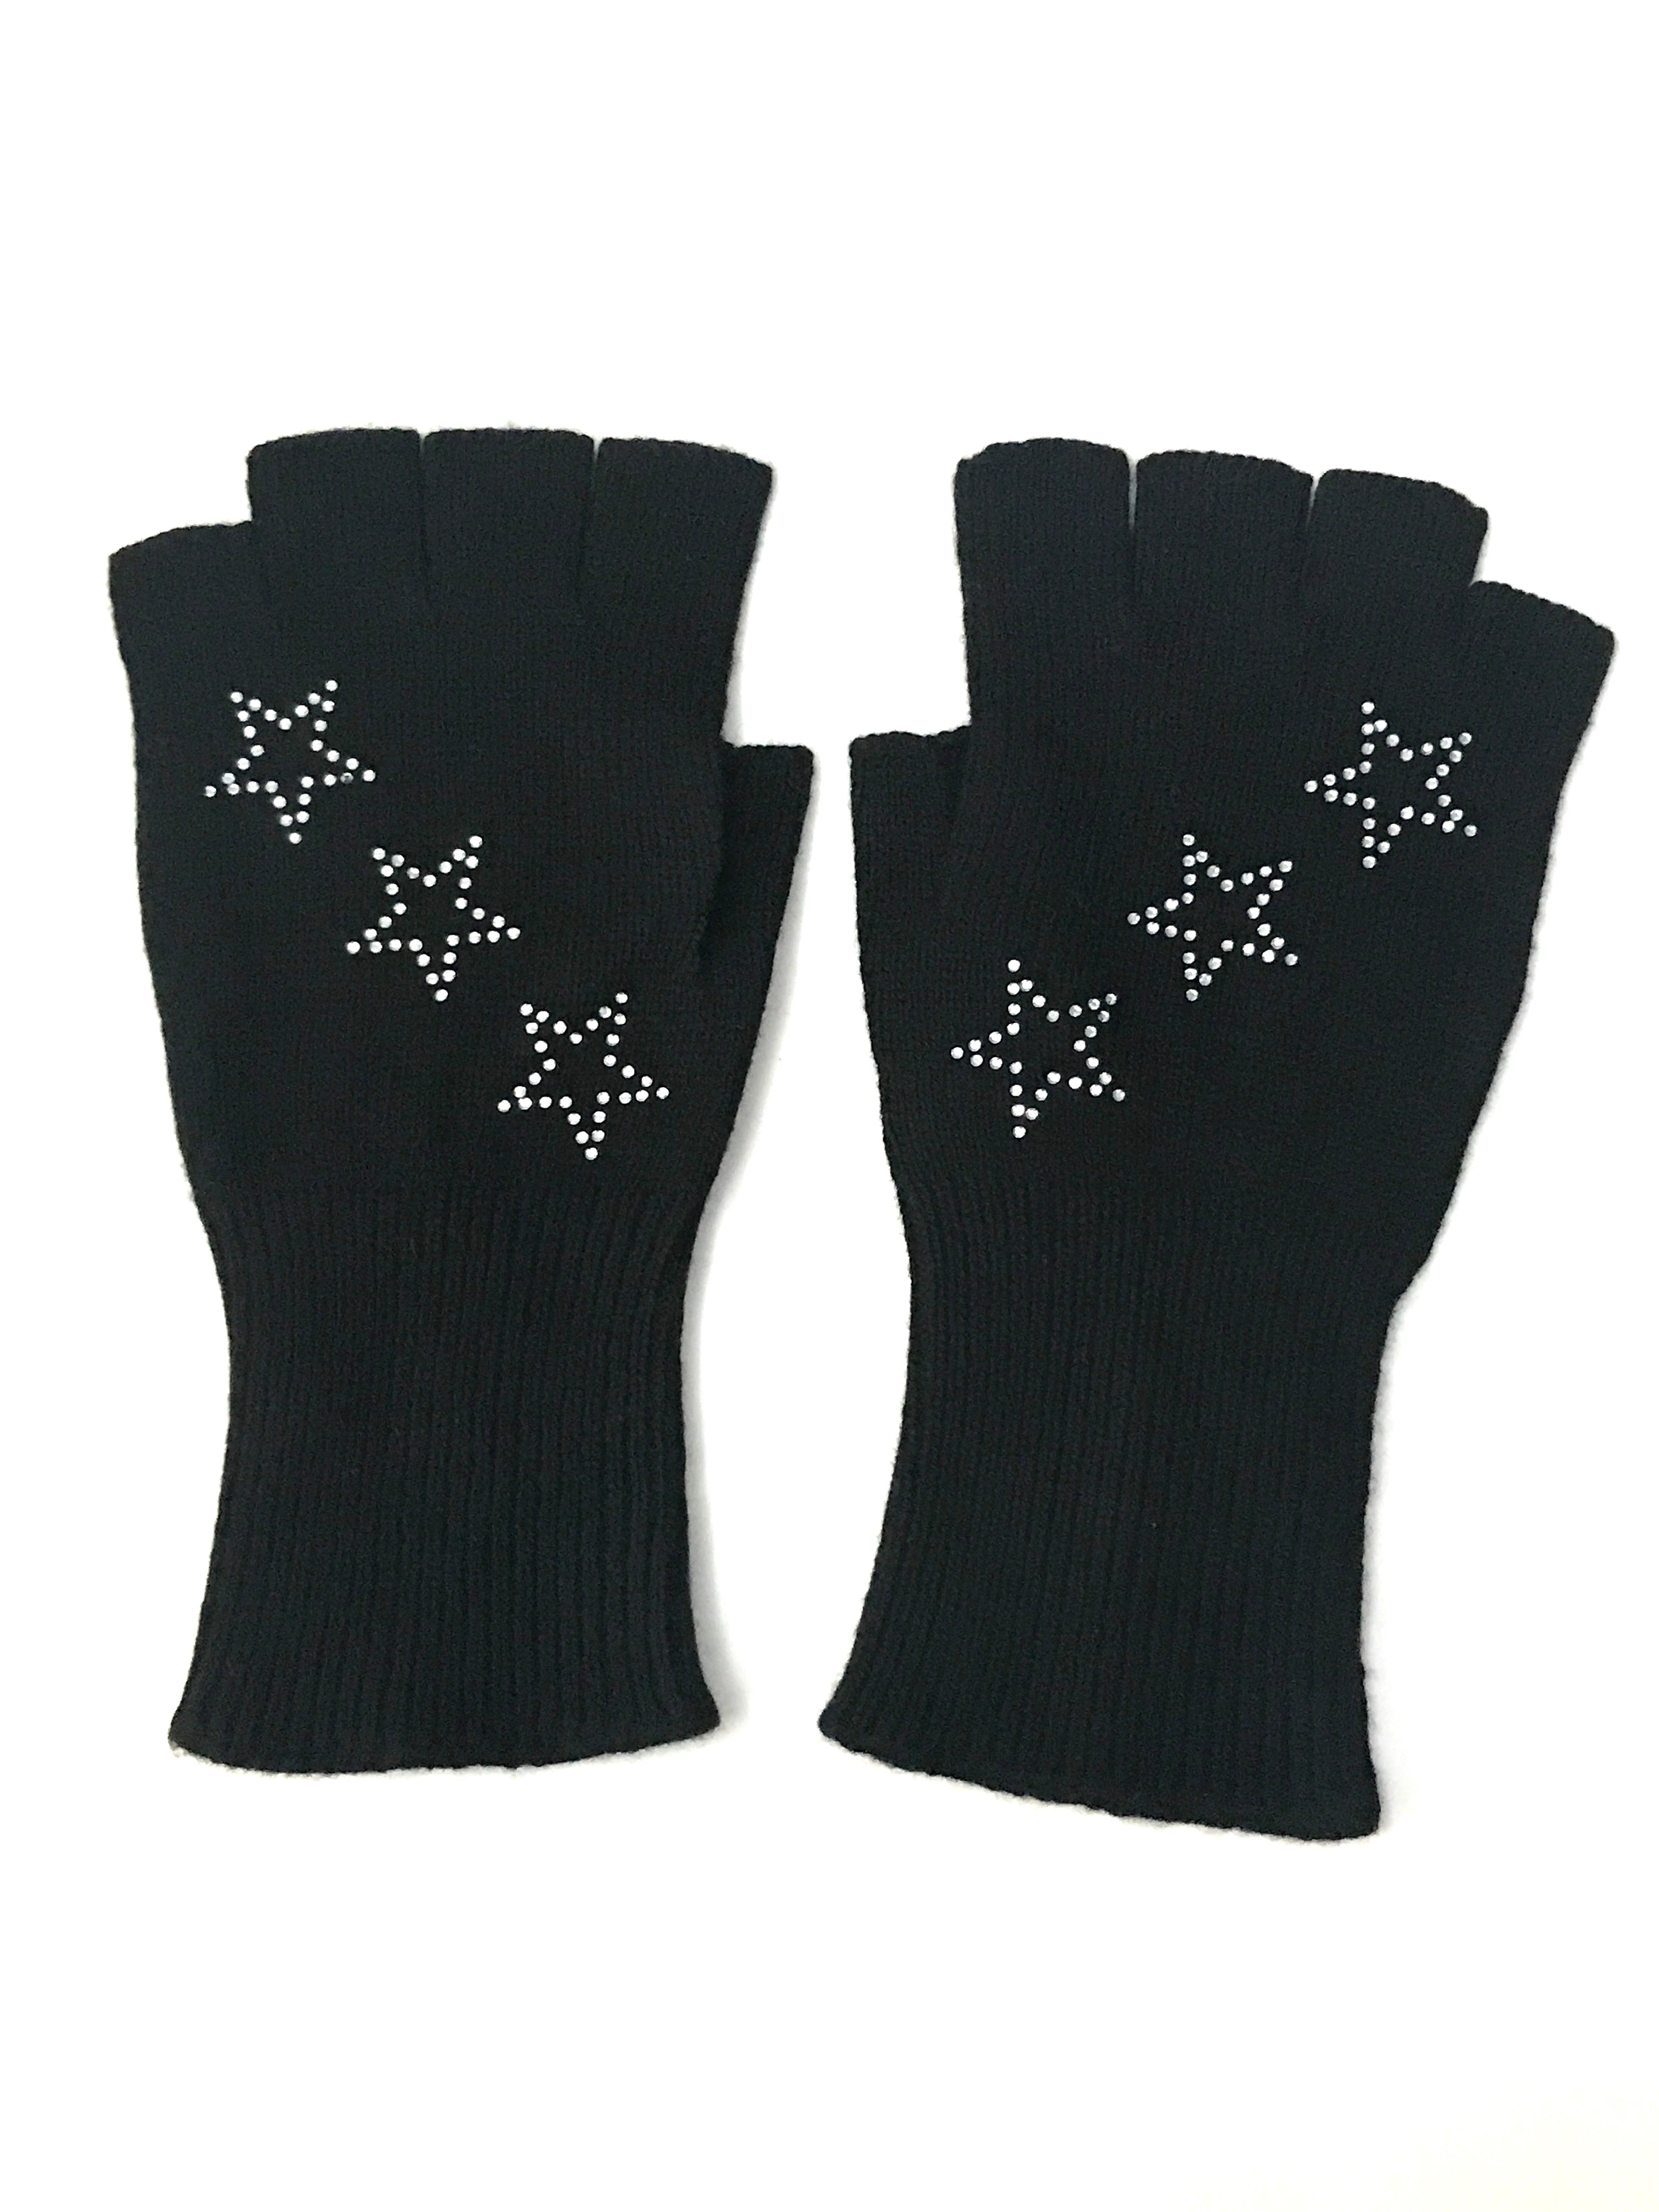 star fingerless gloves black/clear stars